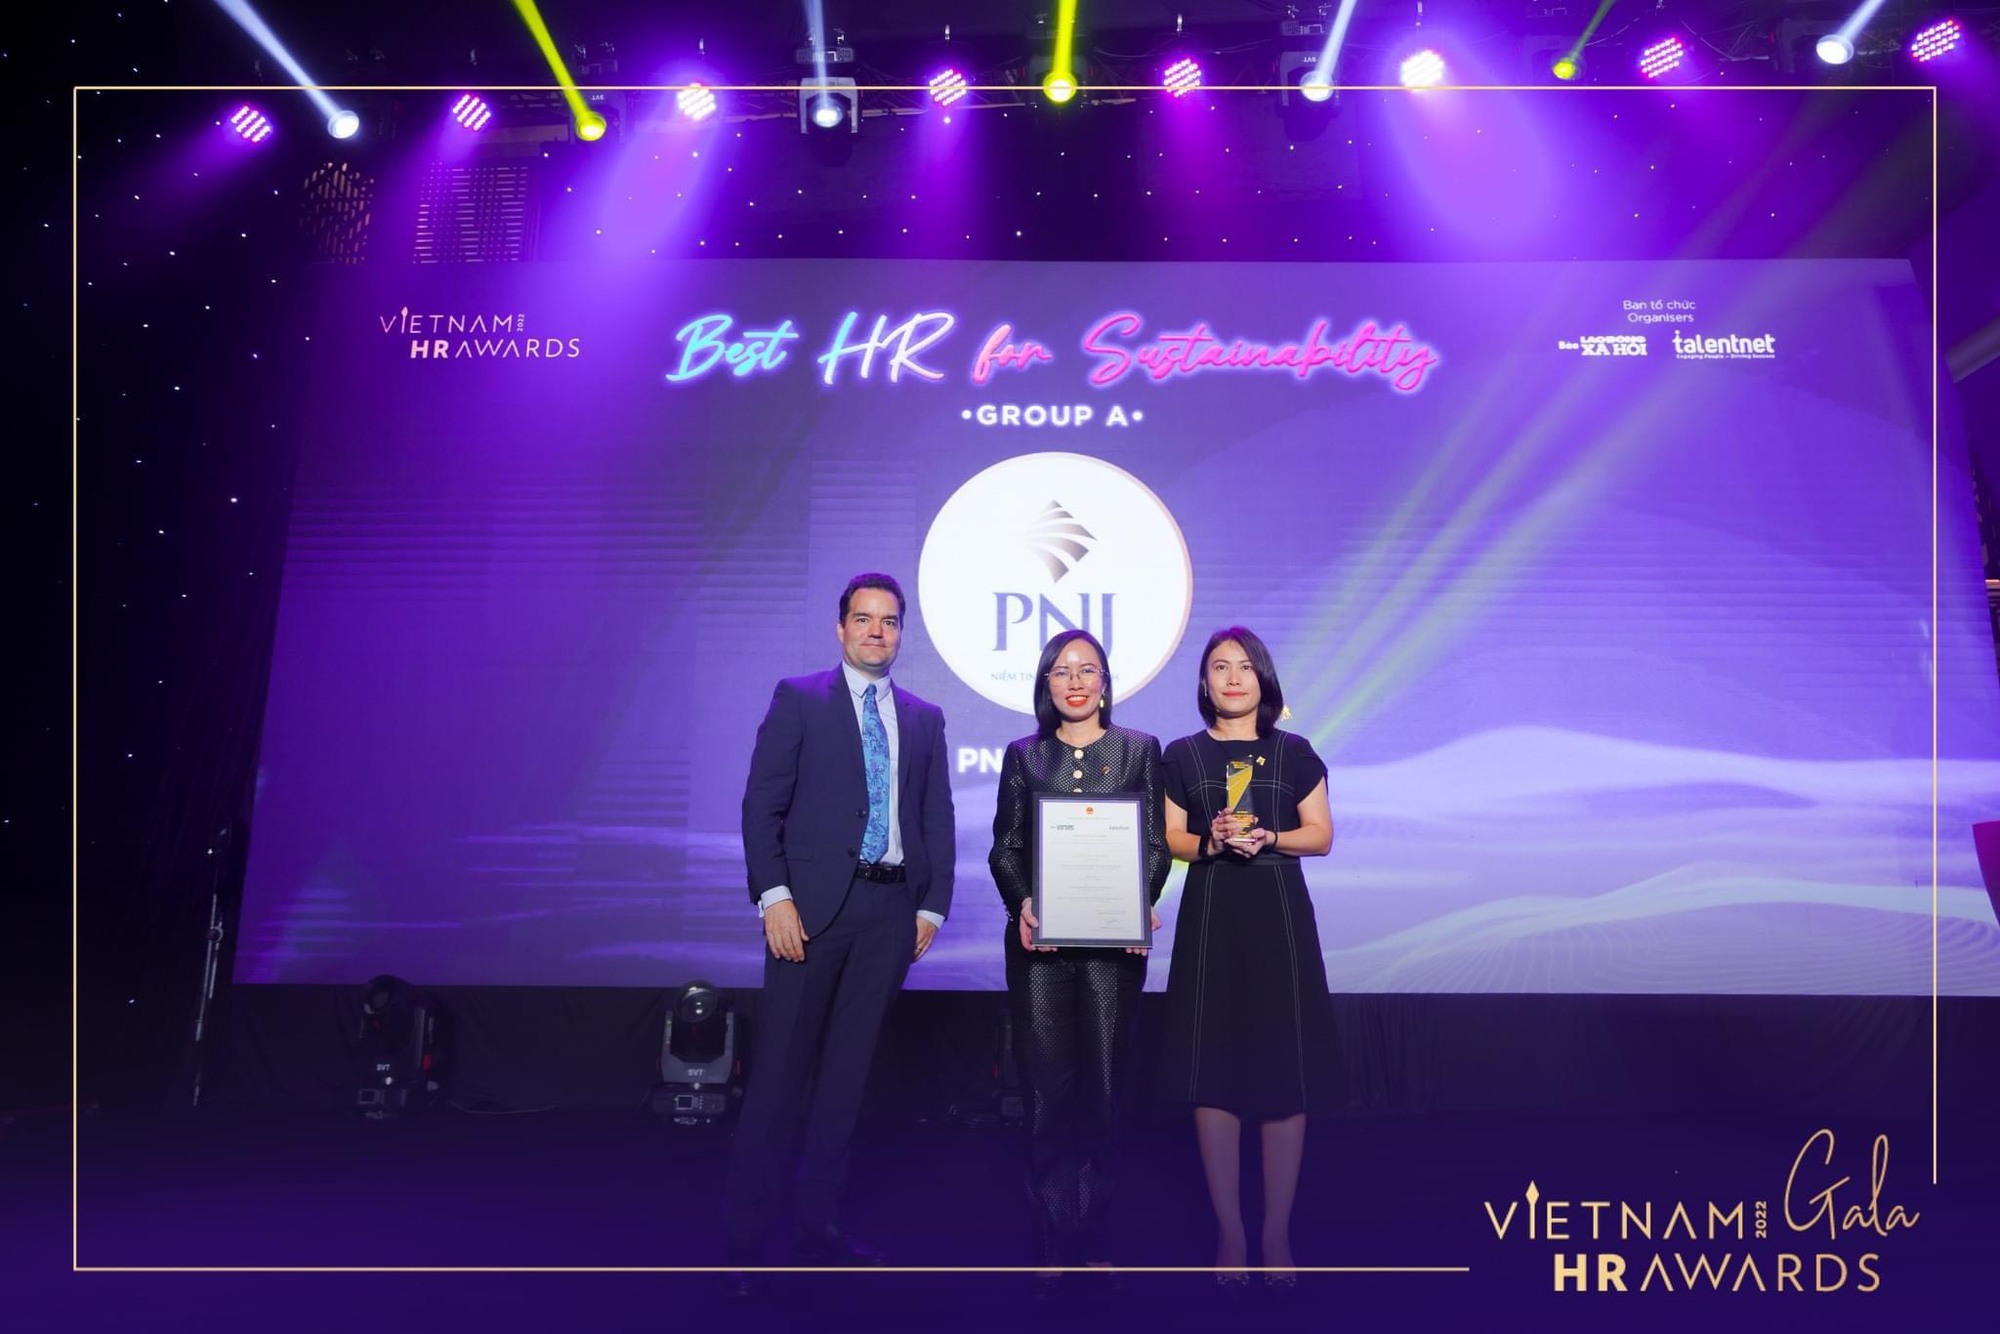 PNJ là doanh nghiệp Việt duy nhất được vinh danh 3 giải “Oscar” nhân sự - Ảnh 3.